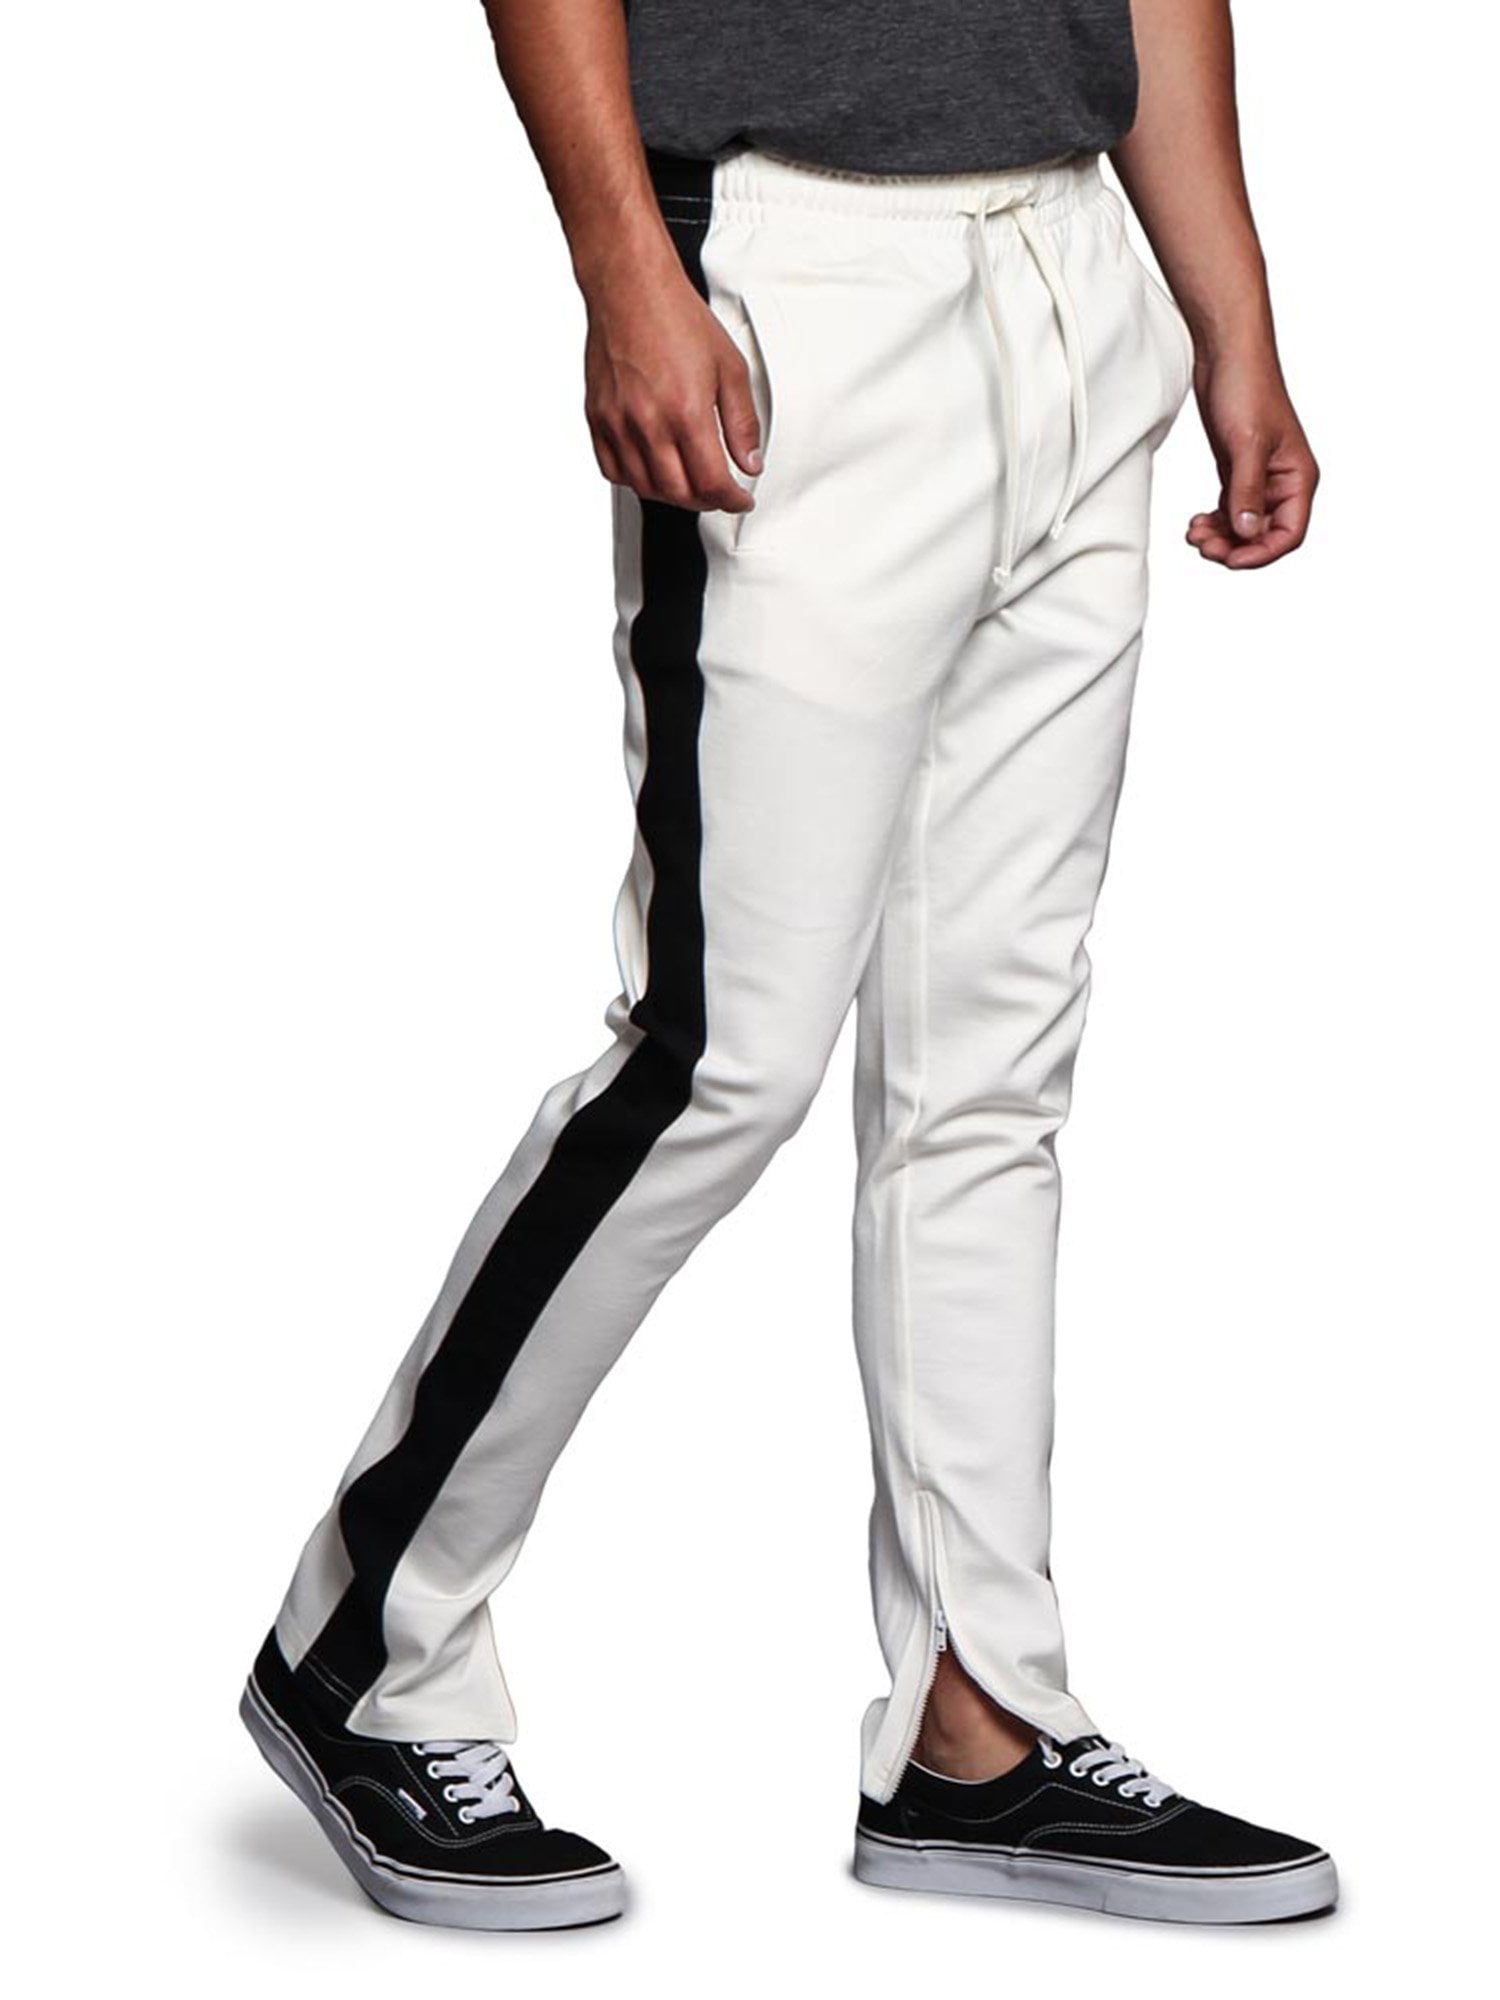 fjendtlighed pause Afhængig G-Style USA Men's Hip Hop Slim Fit Track Pants - Athletic Jogger with Side  Stripe - Off-White/Black - Large - Walmart.com